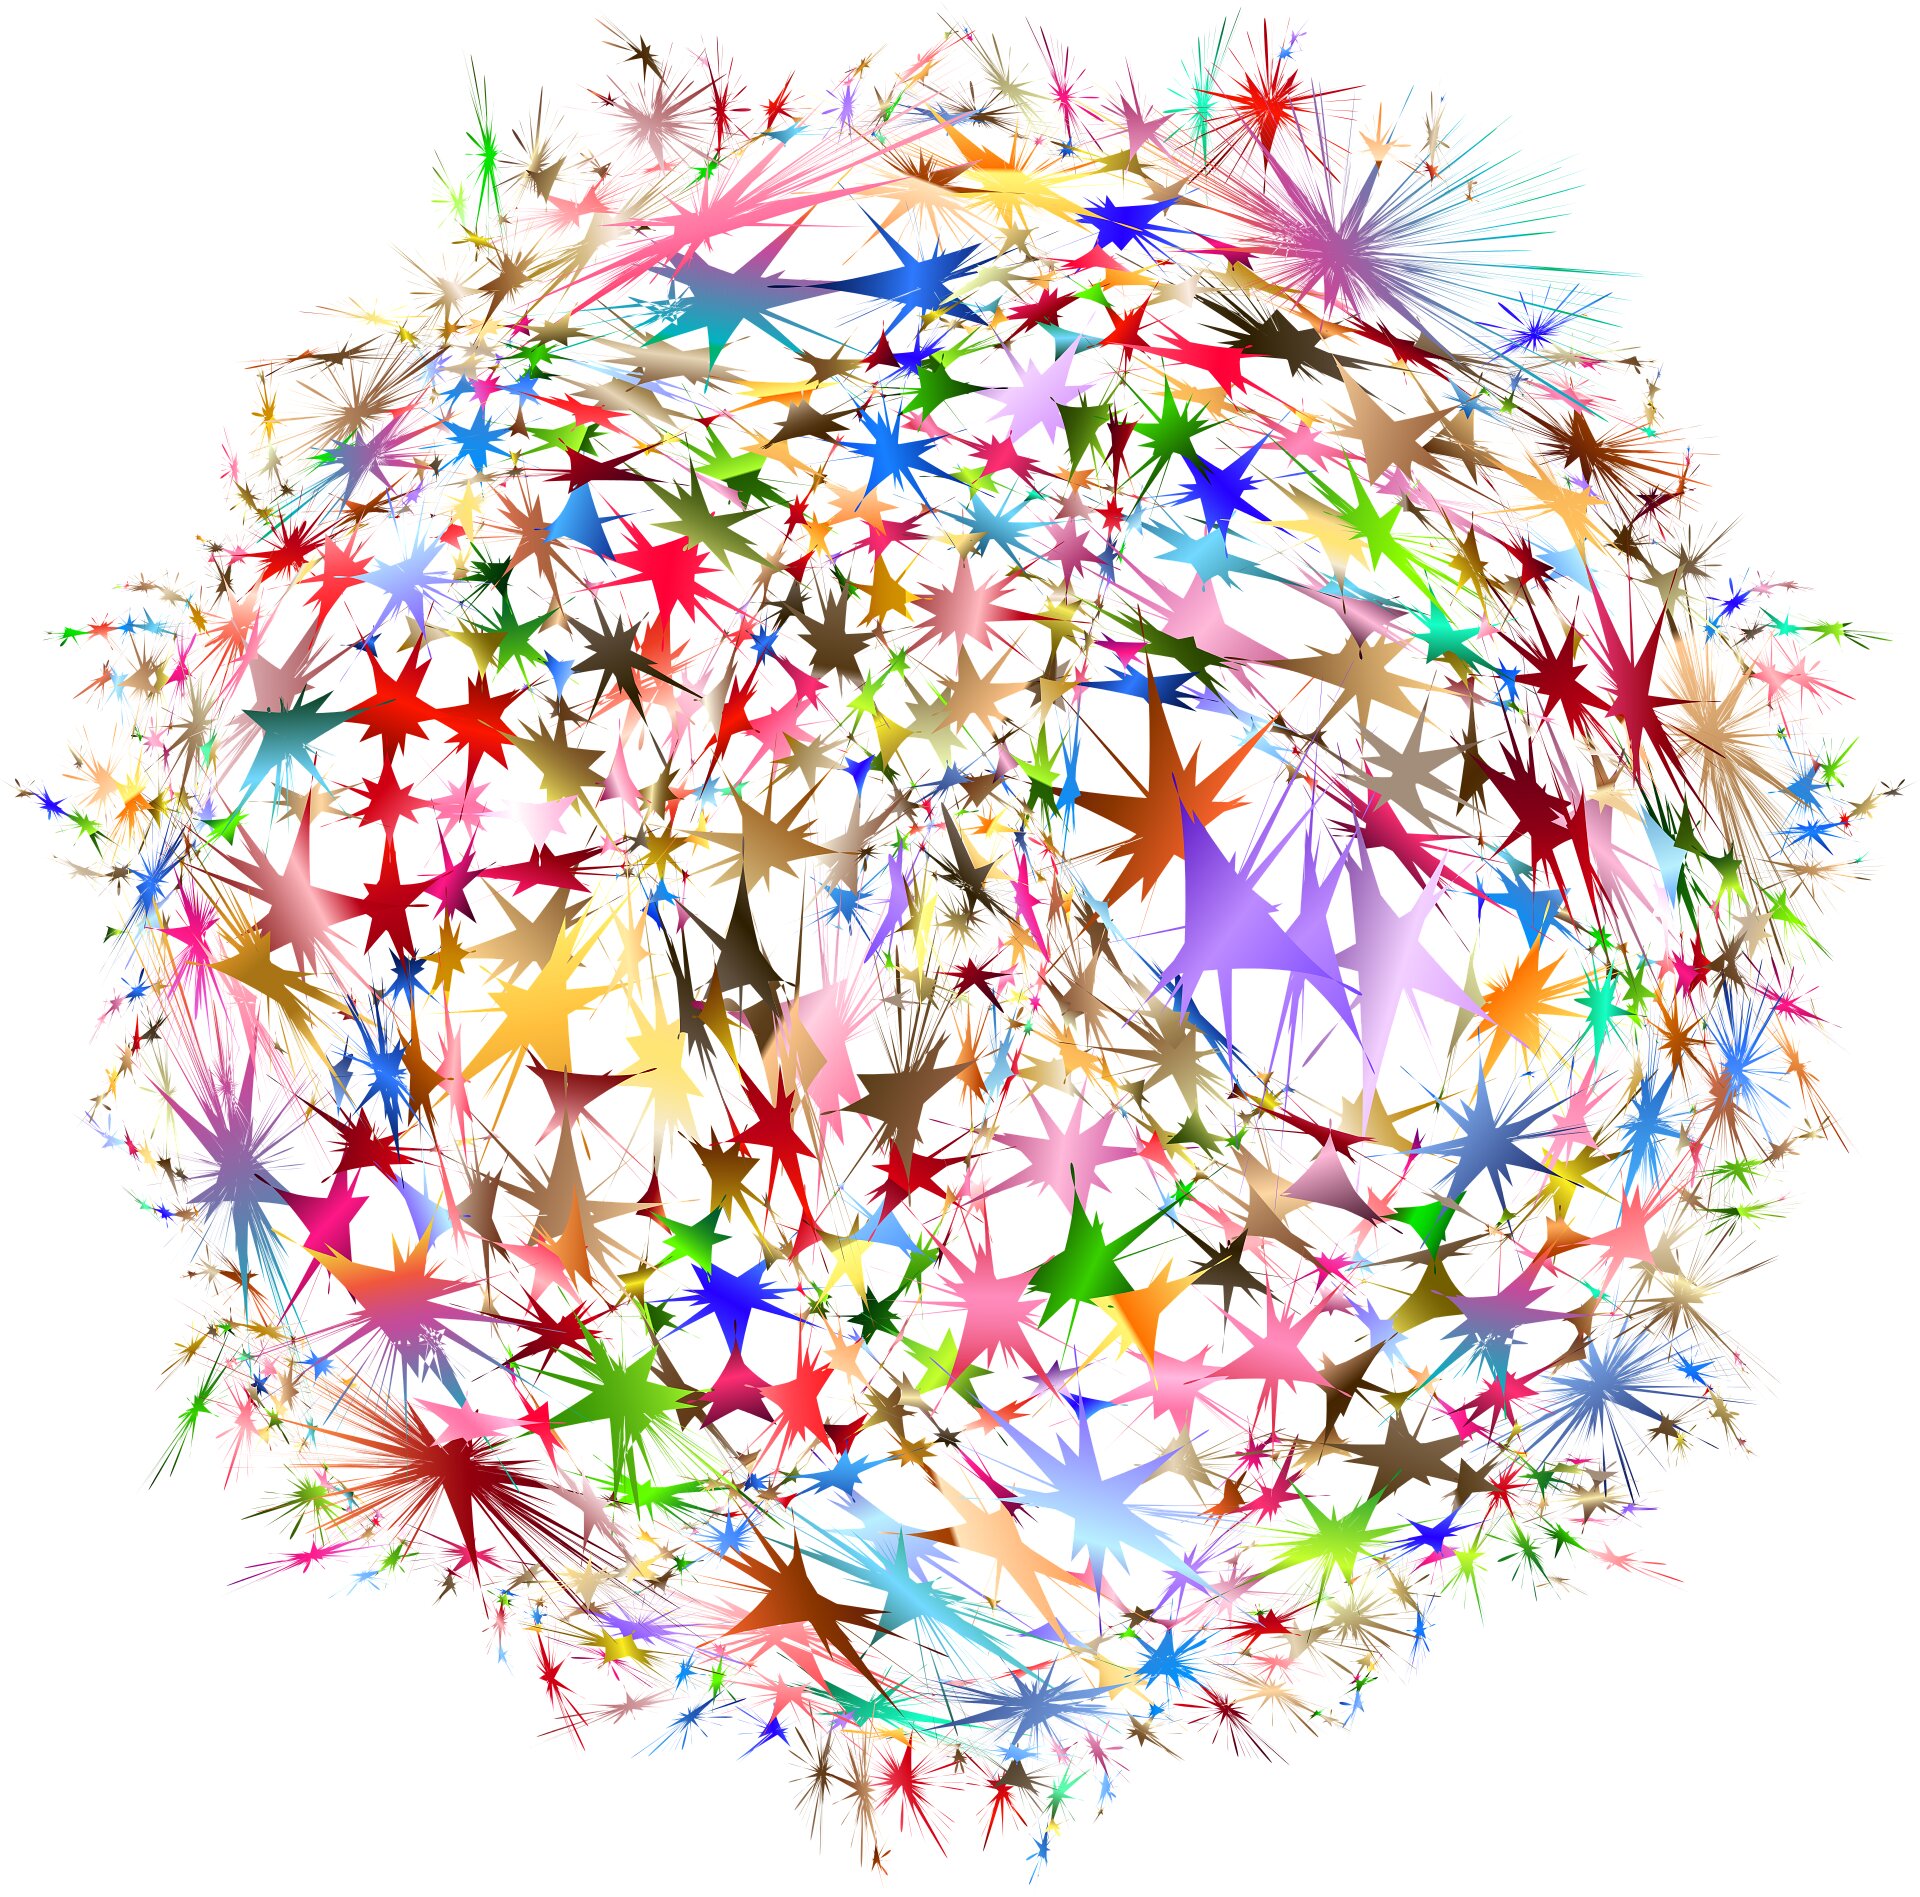 Eine Methode zum Entwurf neuronaler Netze, die für bestimmte Aufgaben optimal geeignet sind